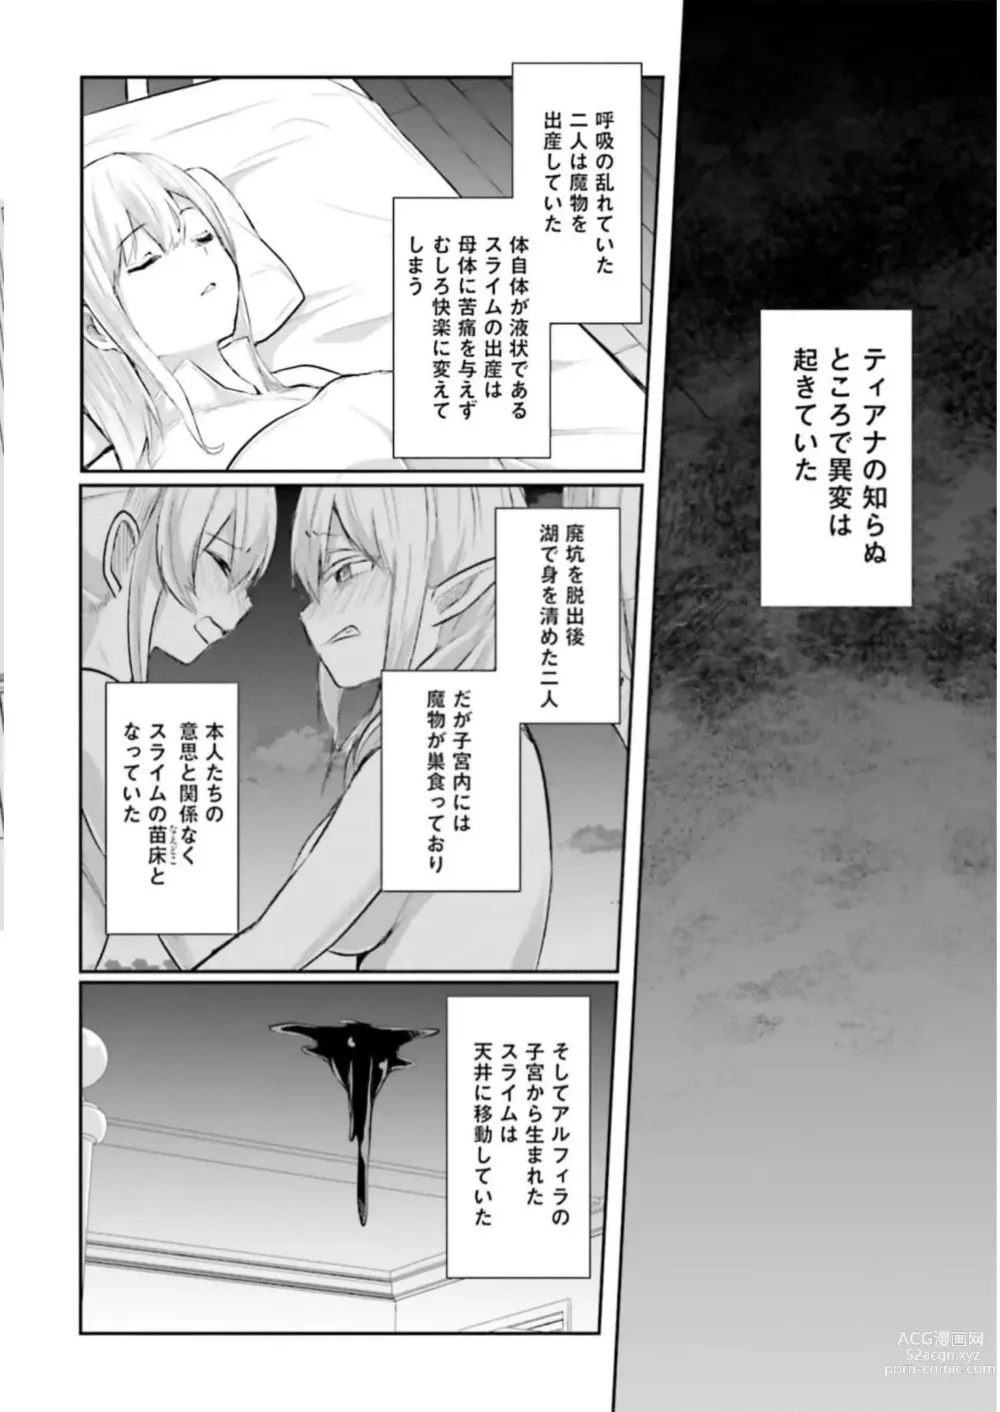 Page 10 of manga Inbi na Doukutsu no Sono Oku de 3